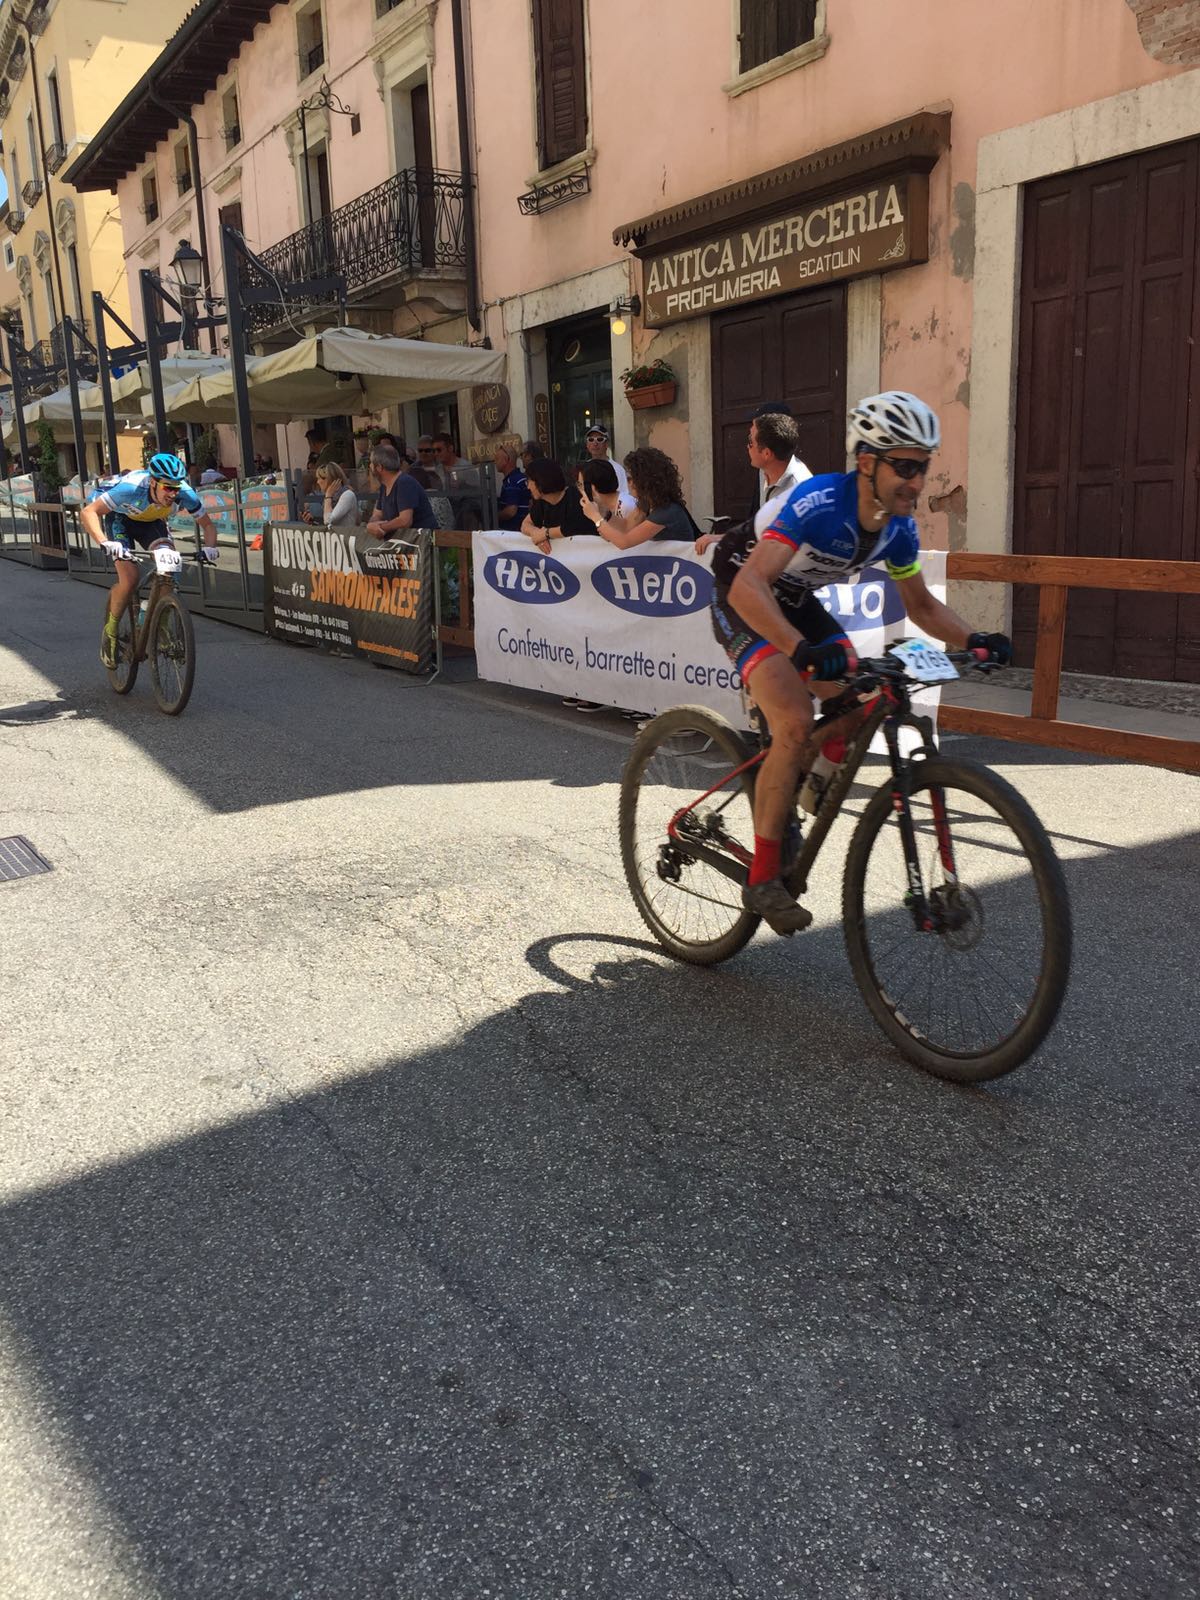 Nuova Corti, MTB, Granfondo Soave Bike, BMC, Racing Team, Sassuolo, Reggio Emilia, Modena